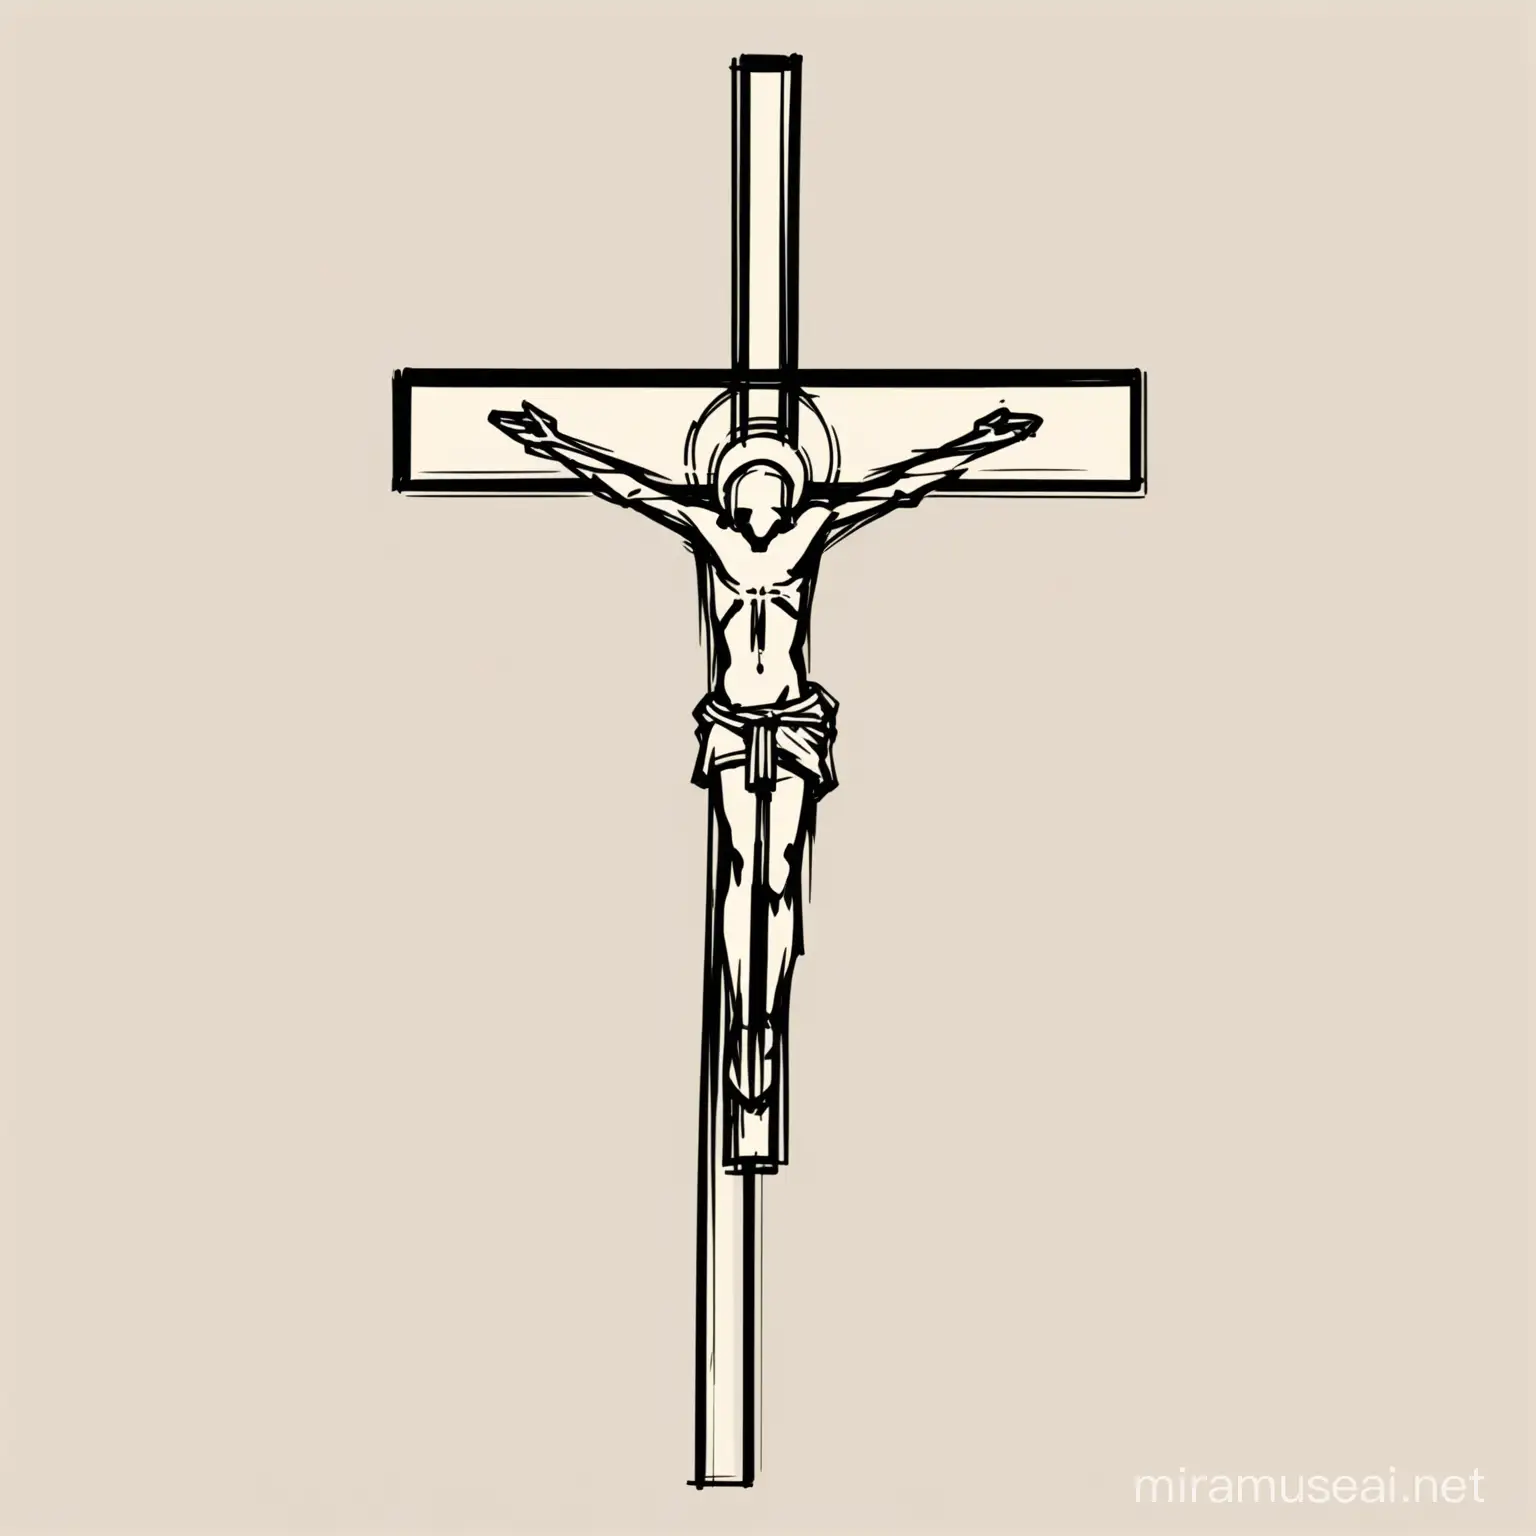 desenho minimalista de crucifixo, só com linhas, o mais simples possível, estilo abstracto